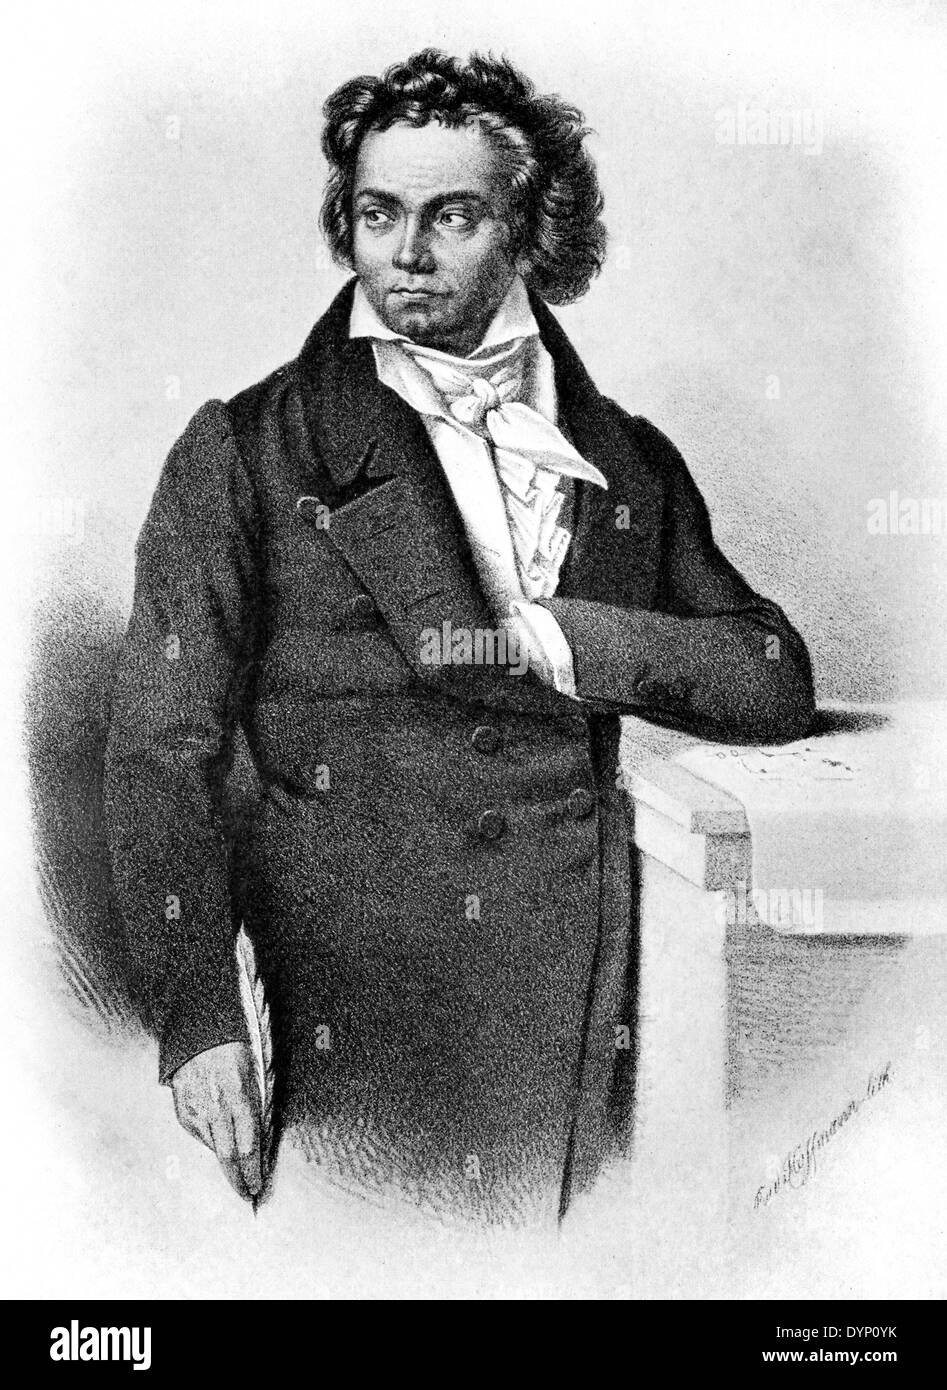 Ludwig van Beethoven (1770-1827), compositeur et pianiste, illustration de l'Encyclopédie Soviétique, 1927 Banque D'Images